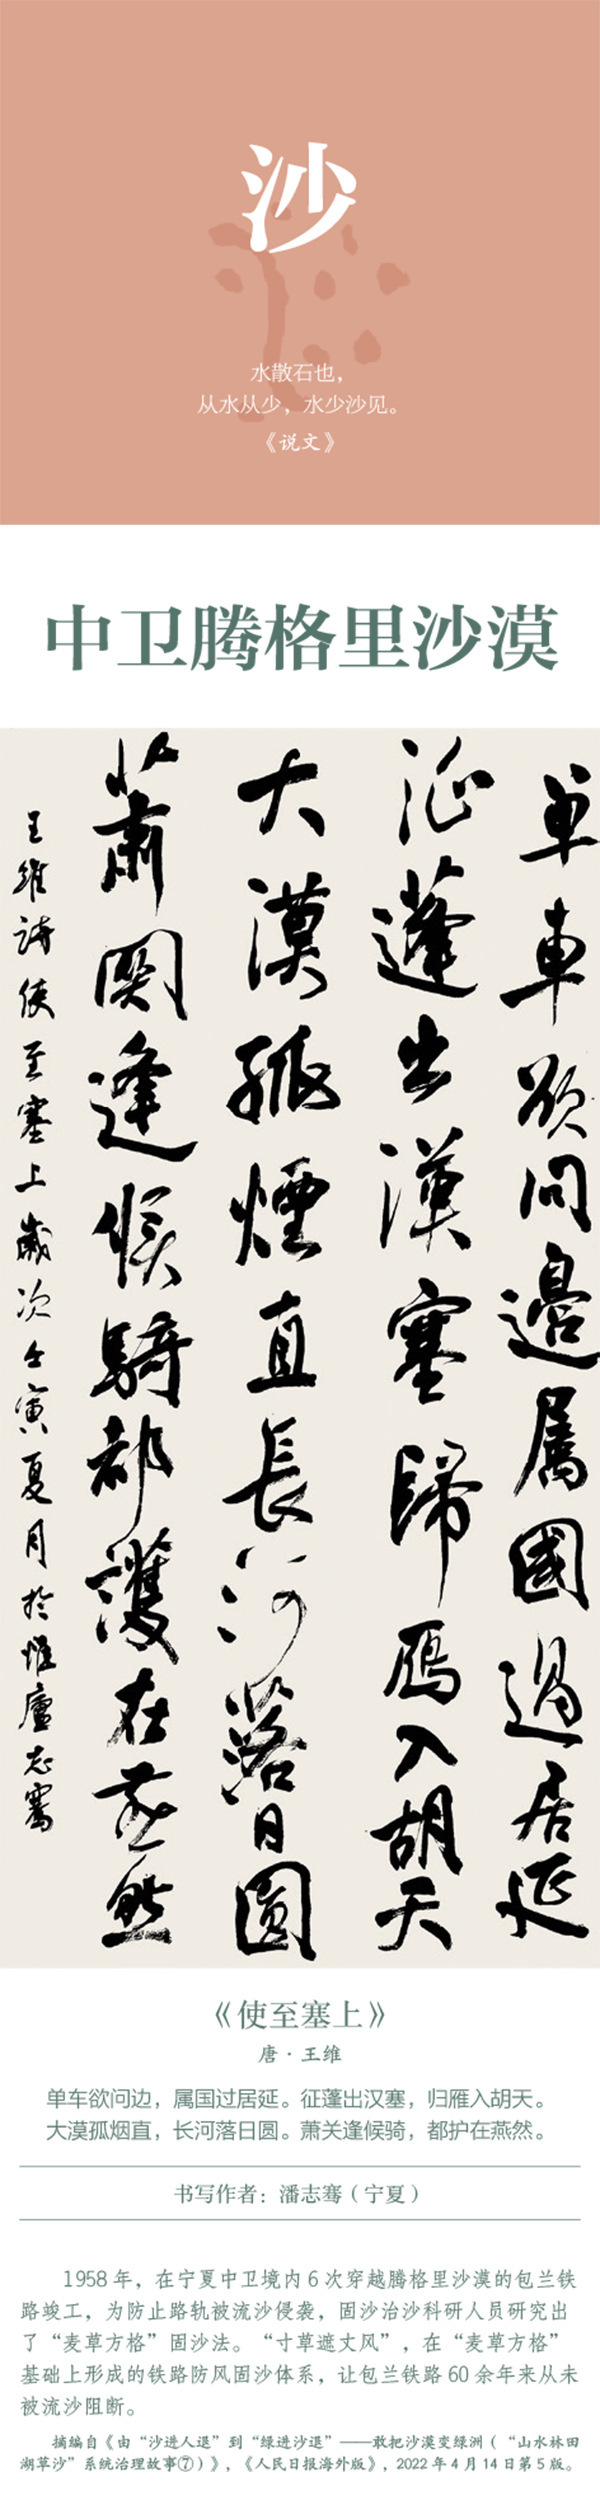 中國書協主題創作書法系列展——美麗中國插圖26題字網